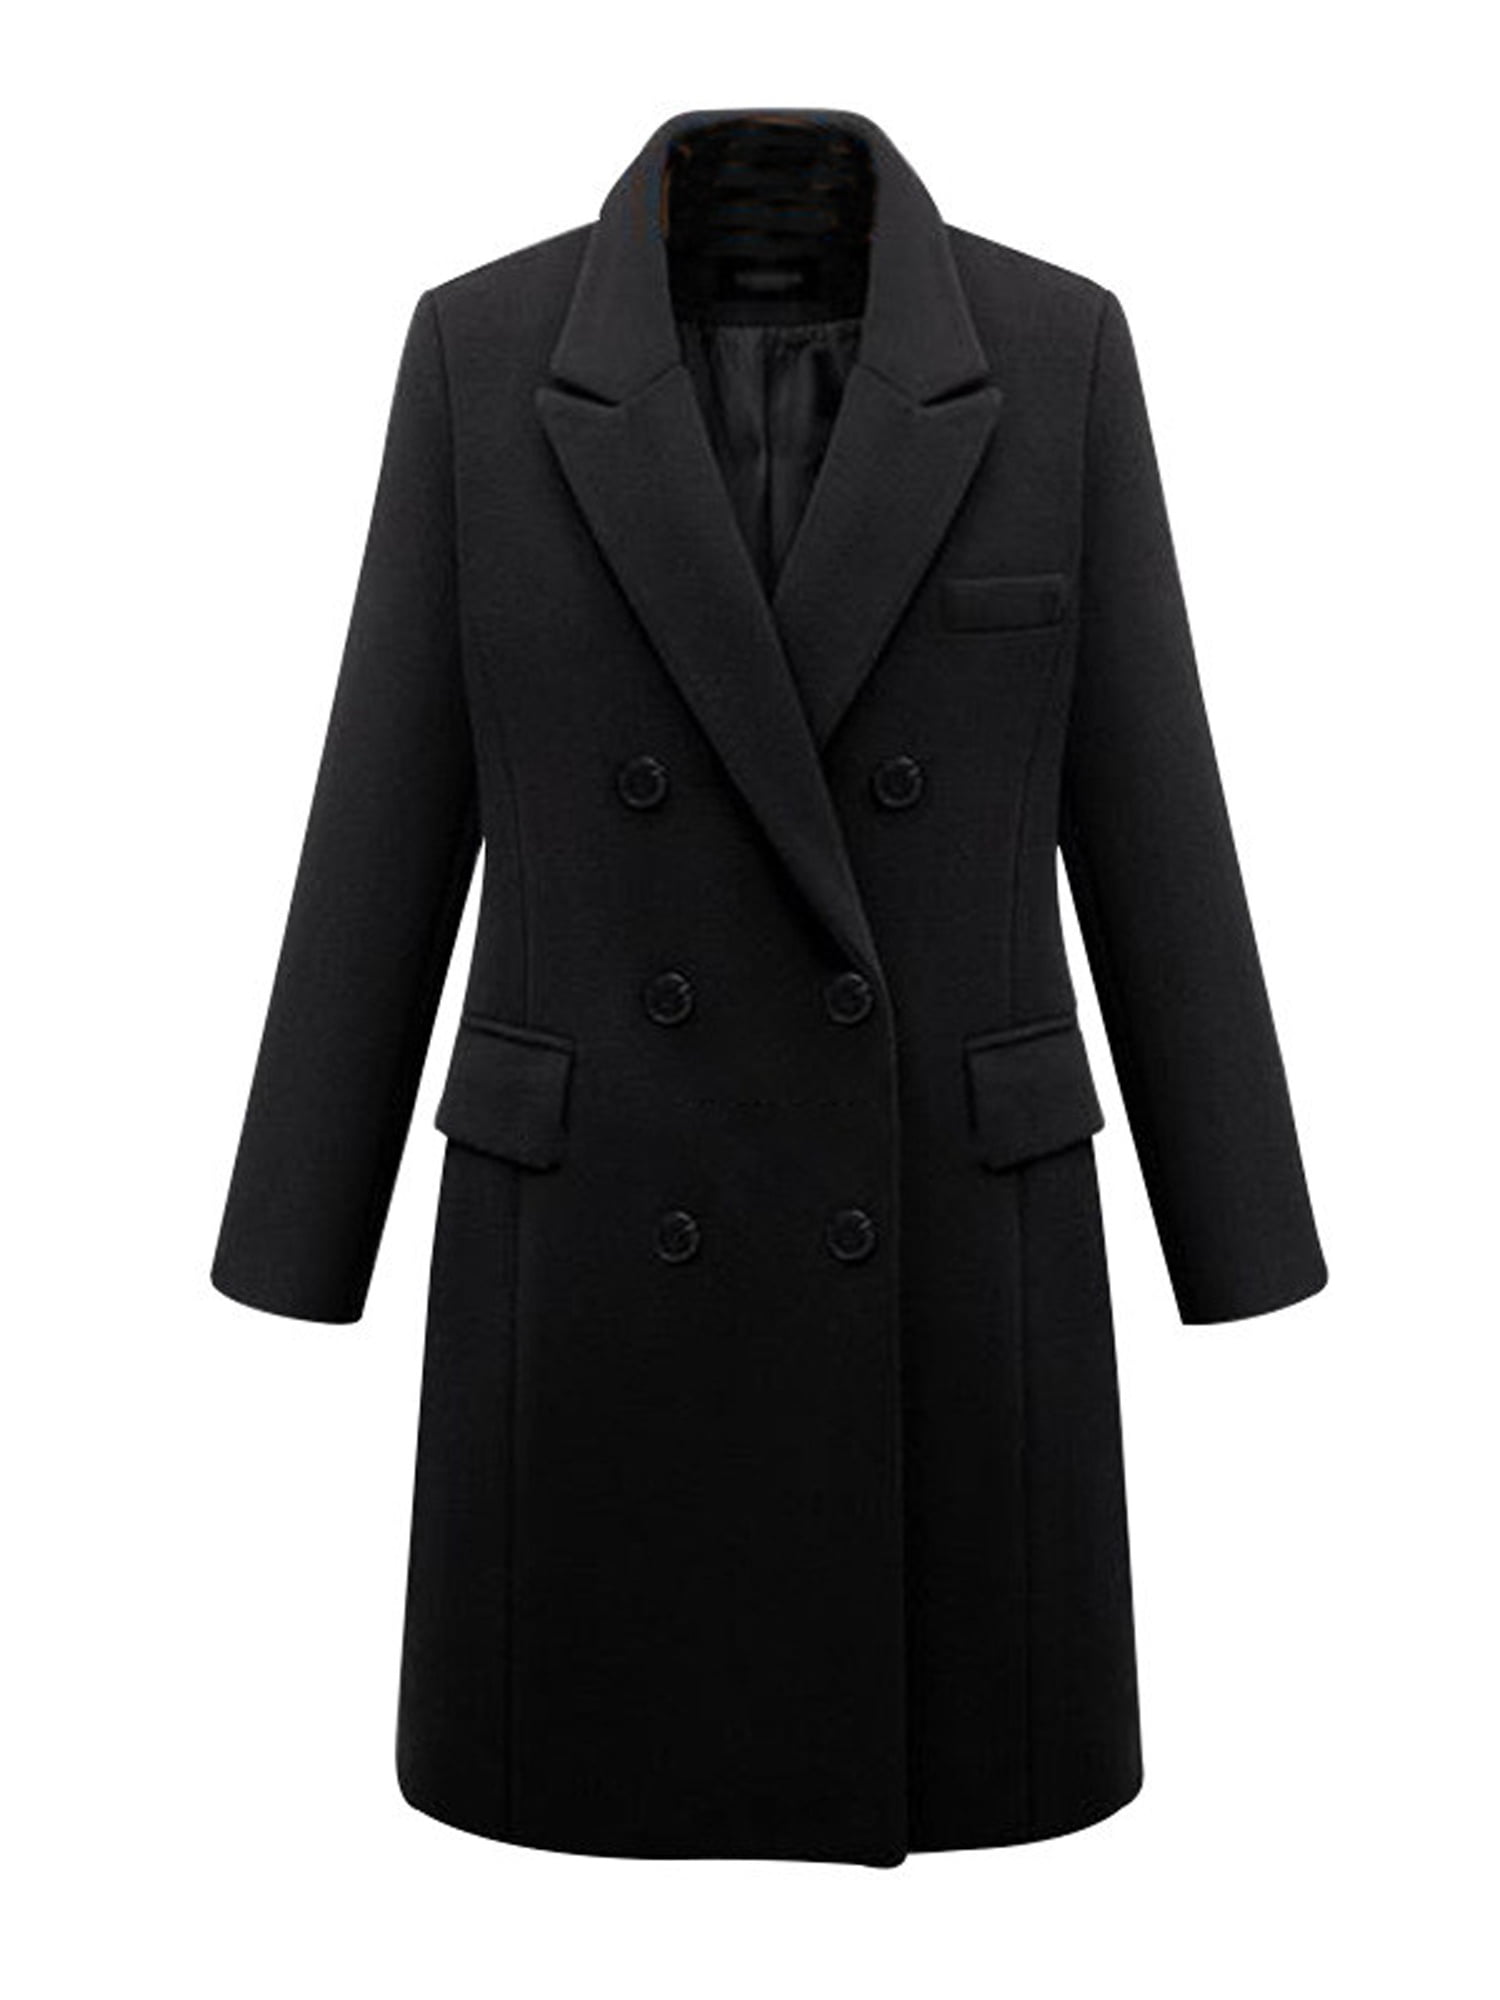 Womens Double Breasted Pea Coat Winter Lapel Wool Trench Jacket Slim Long Solid Parka Outwear Windbreak Plus Size 